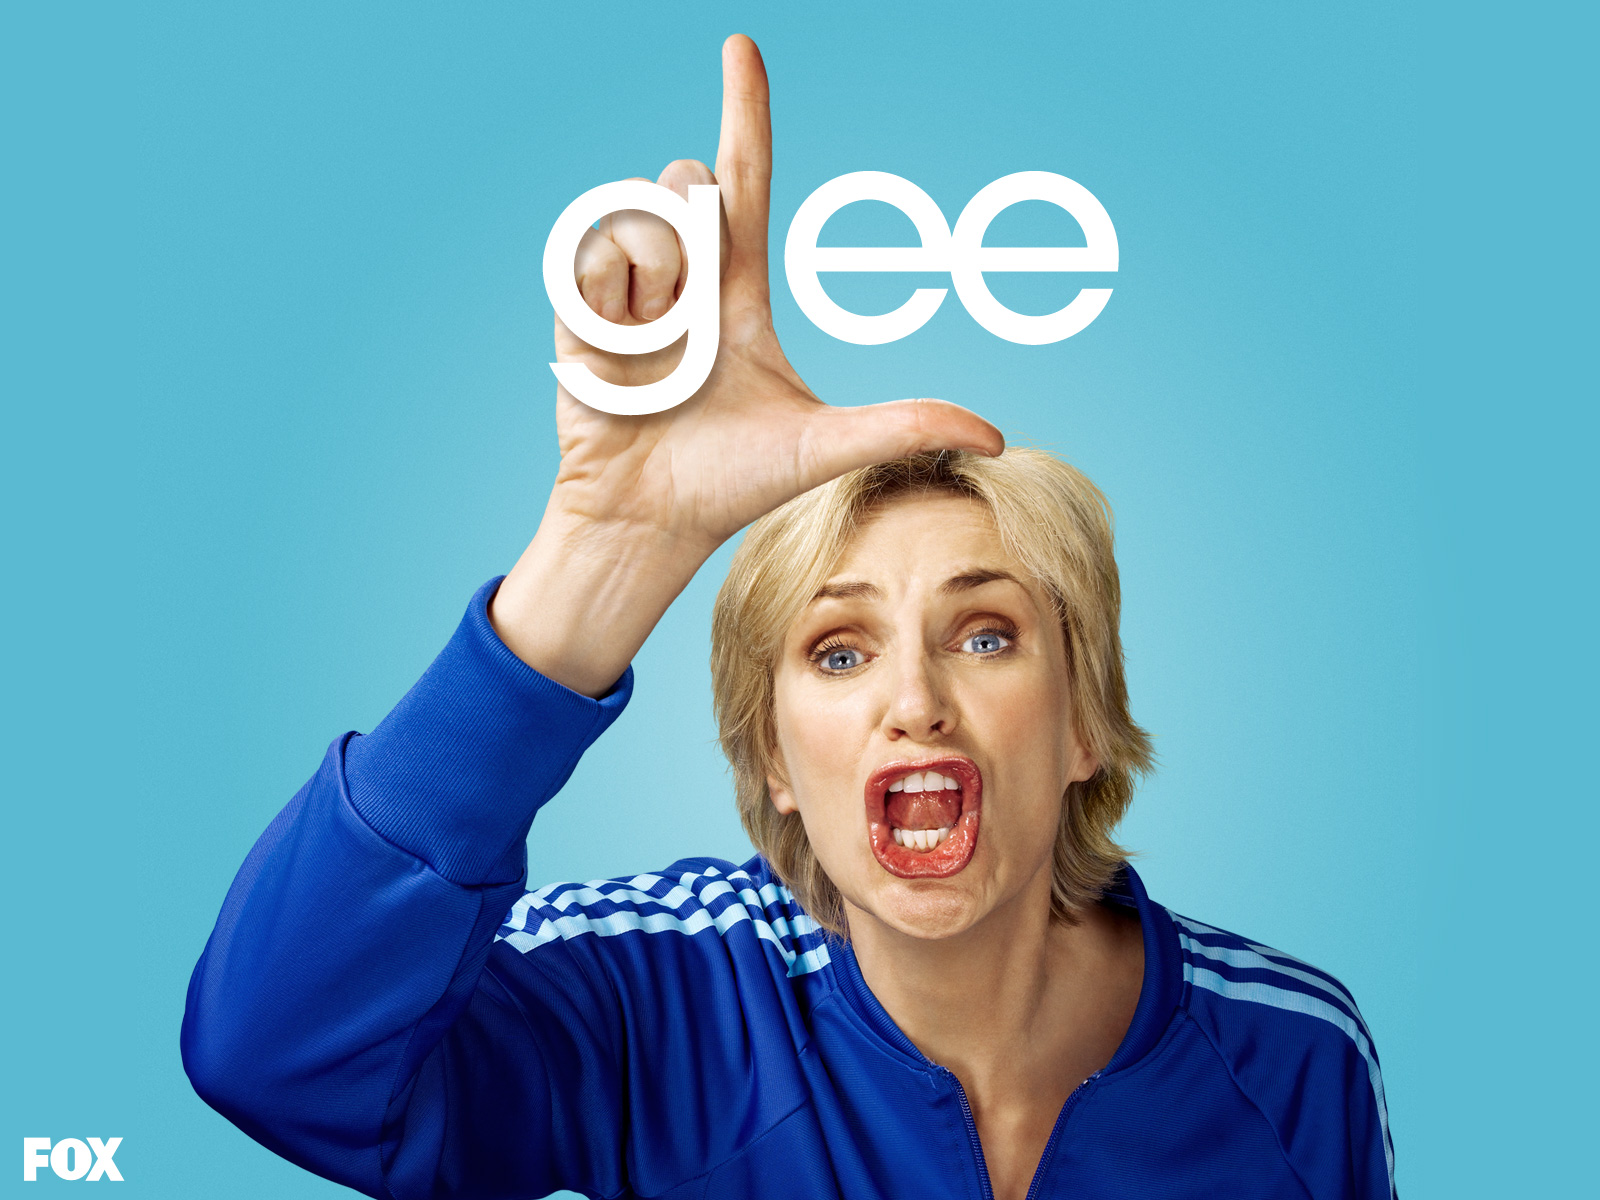 Glee Sue Wallpaper Myspace Background